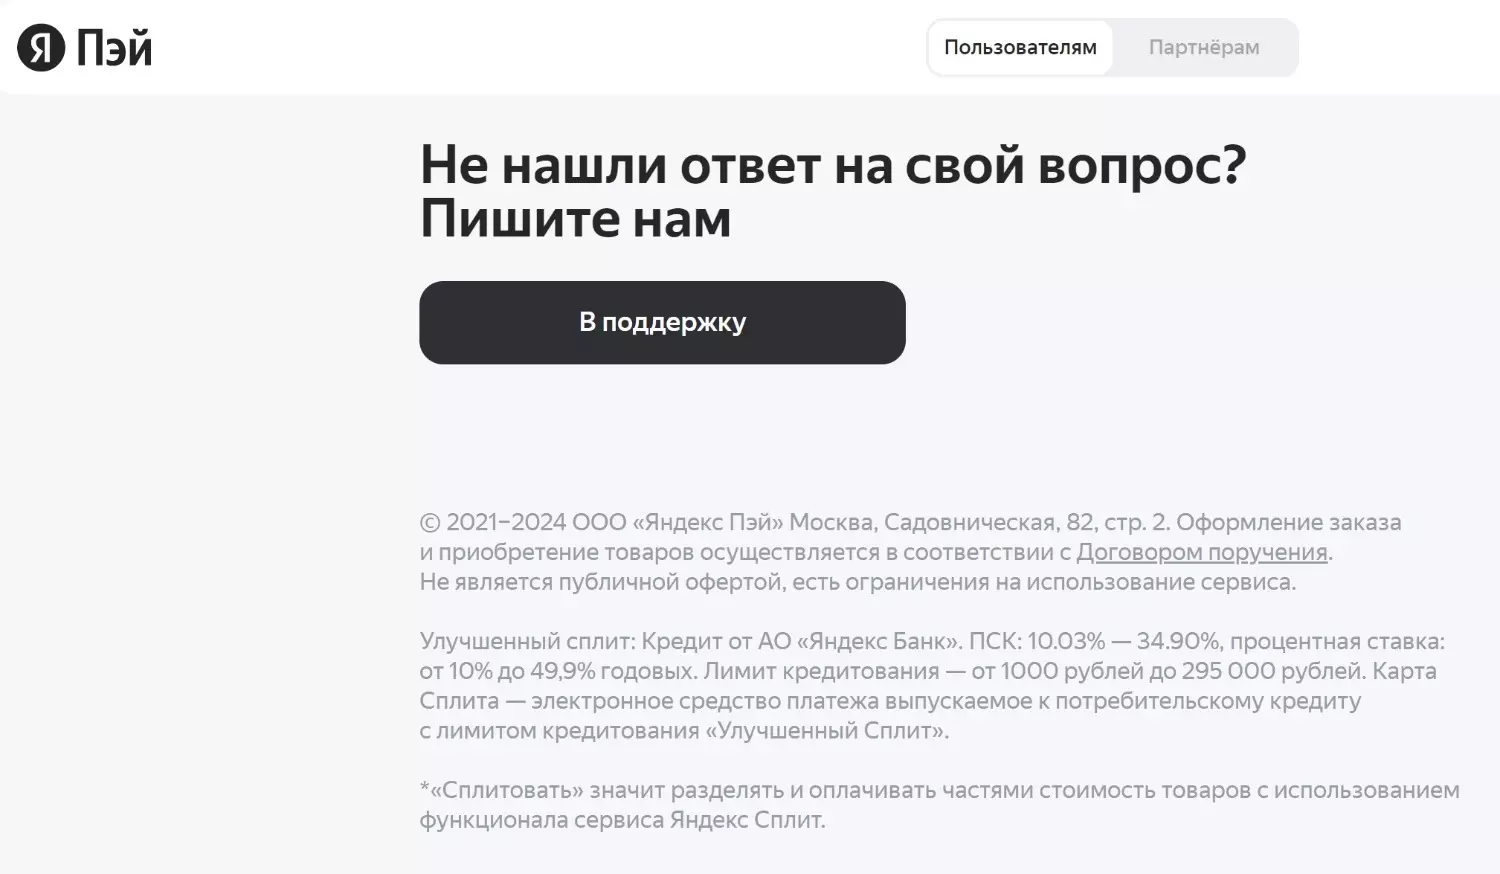 «Улучшенный сплит» от Яндекса — это кредит со ставкой до 49,9% годовых